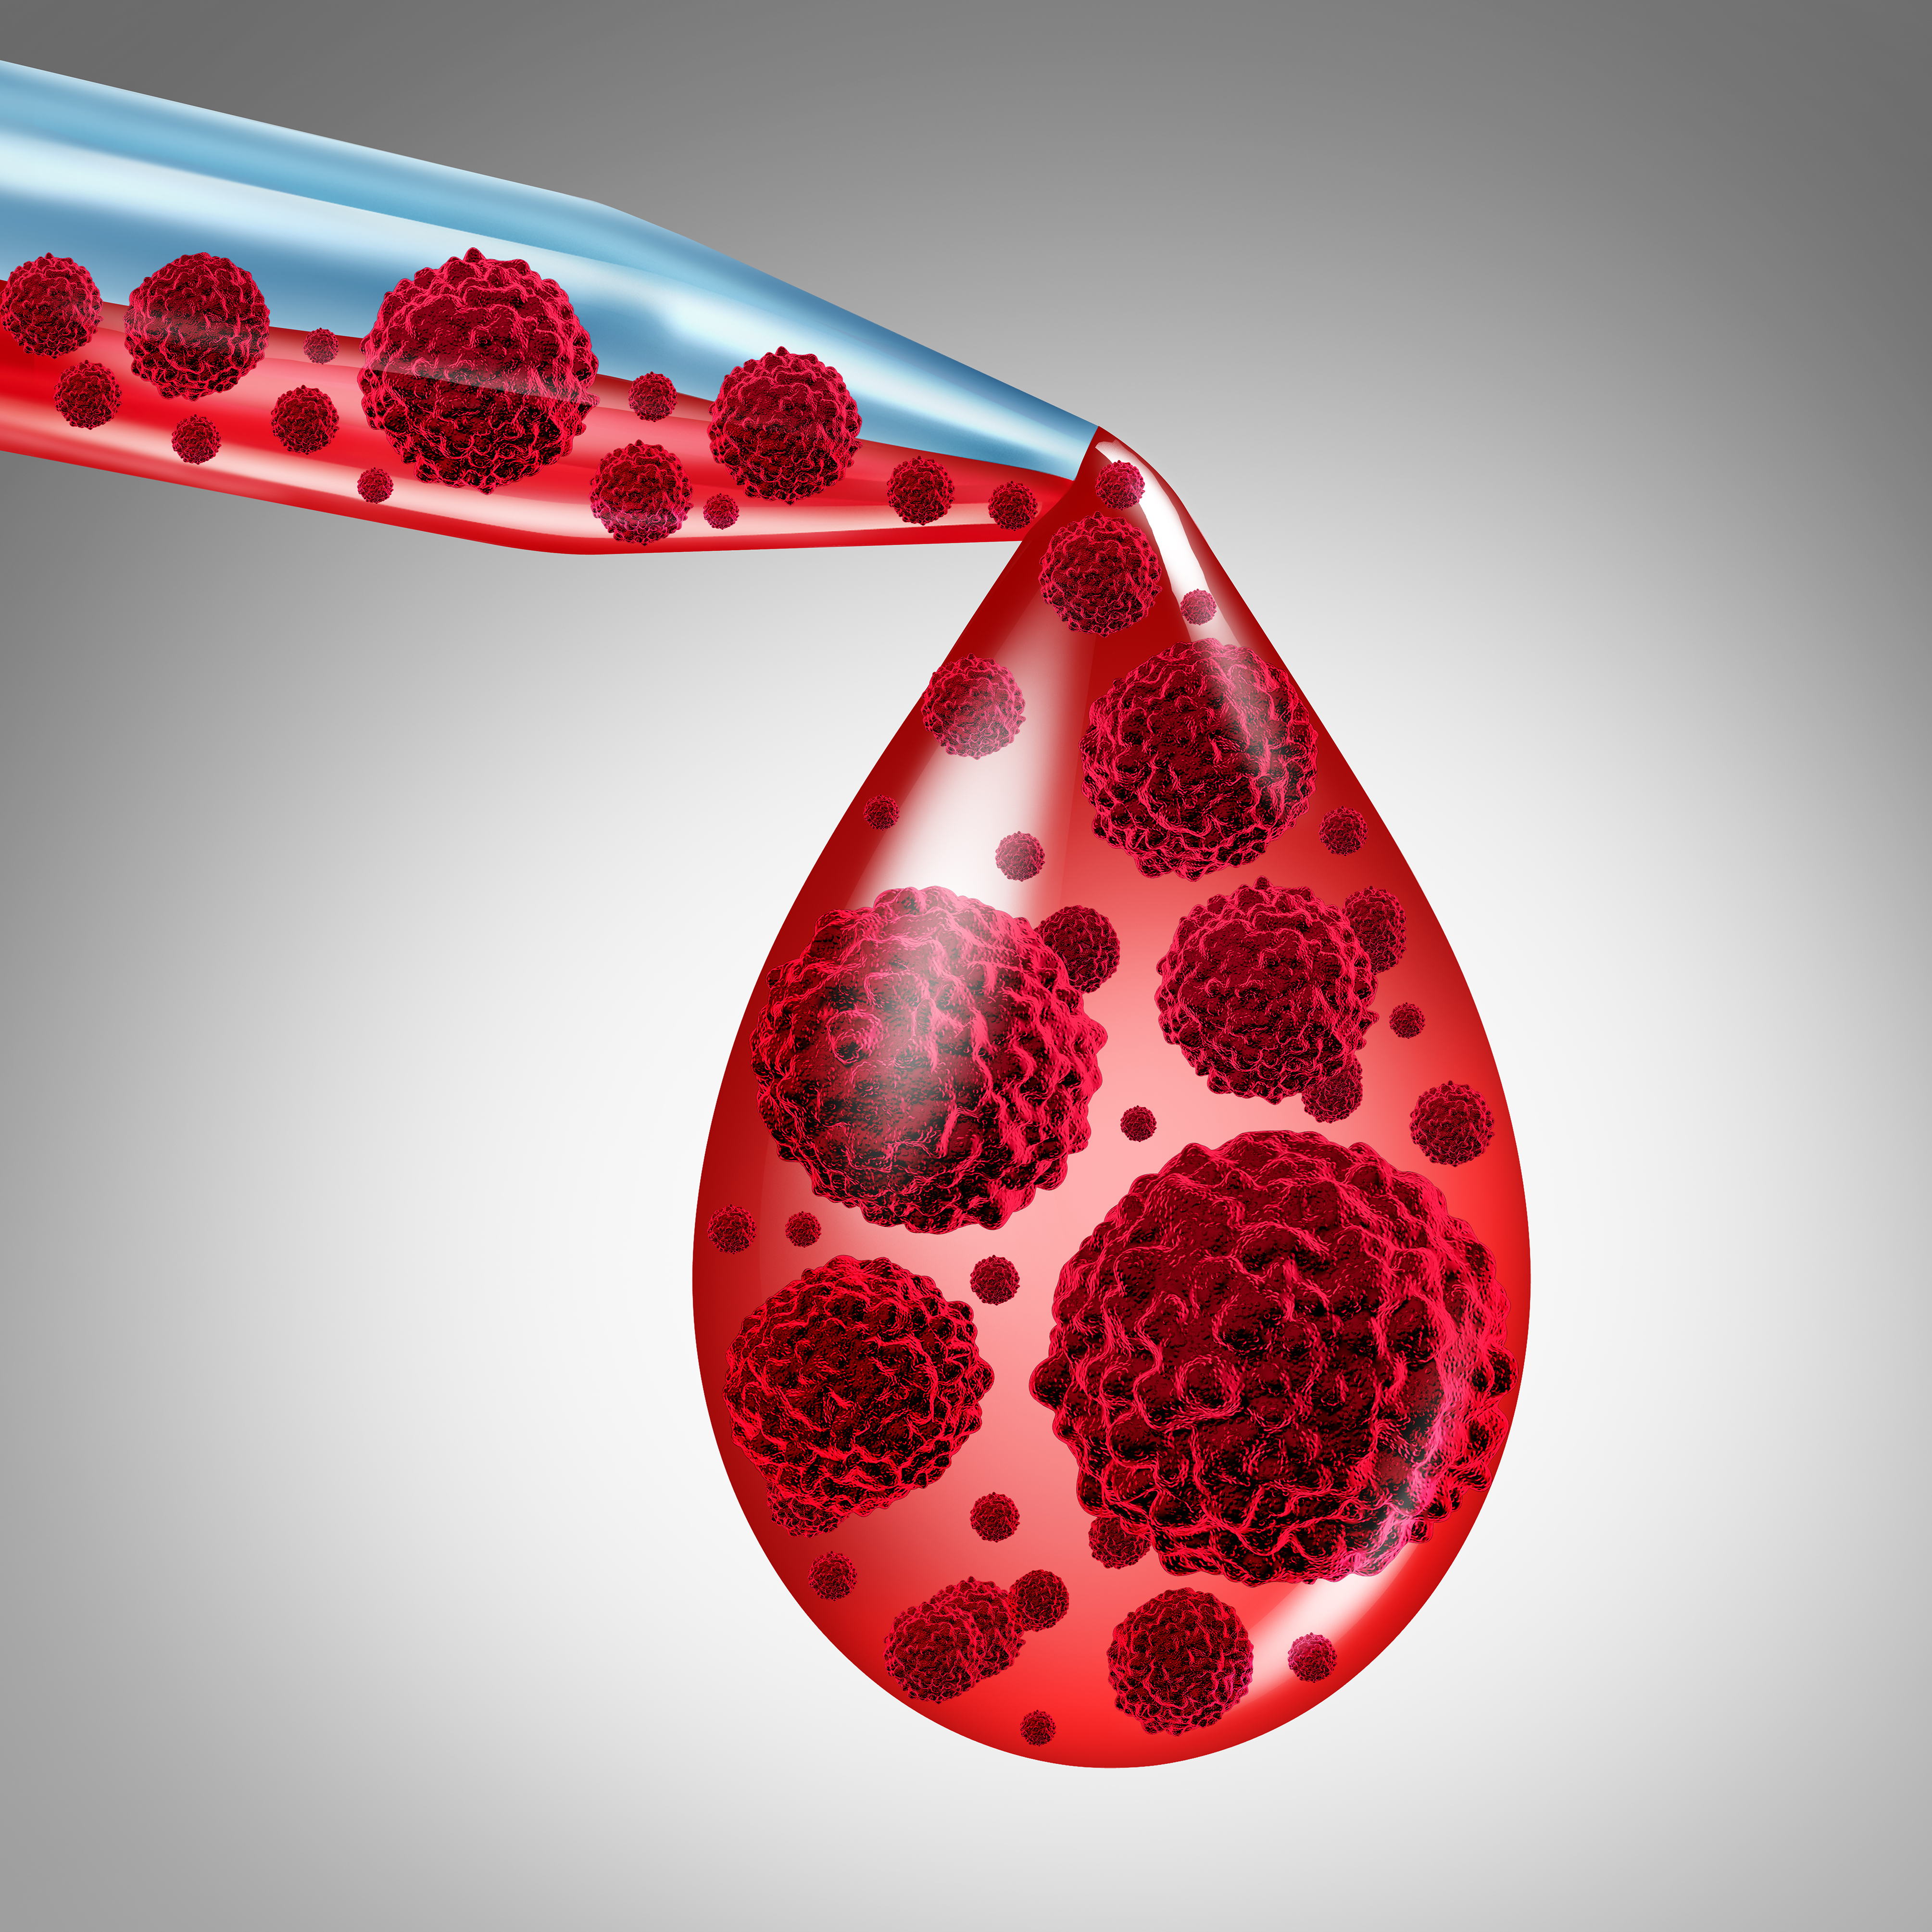 【柳叶刀-血液学】EBMT<font color="red">专家</font><font color="red">共识</font>：异基因造血干细胞移植后的供者淋巴细胞输注